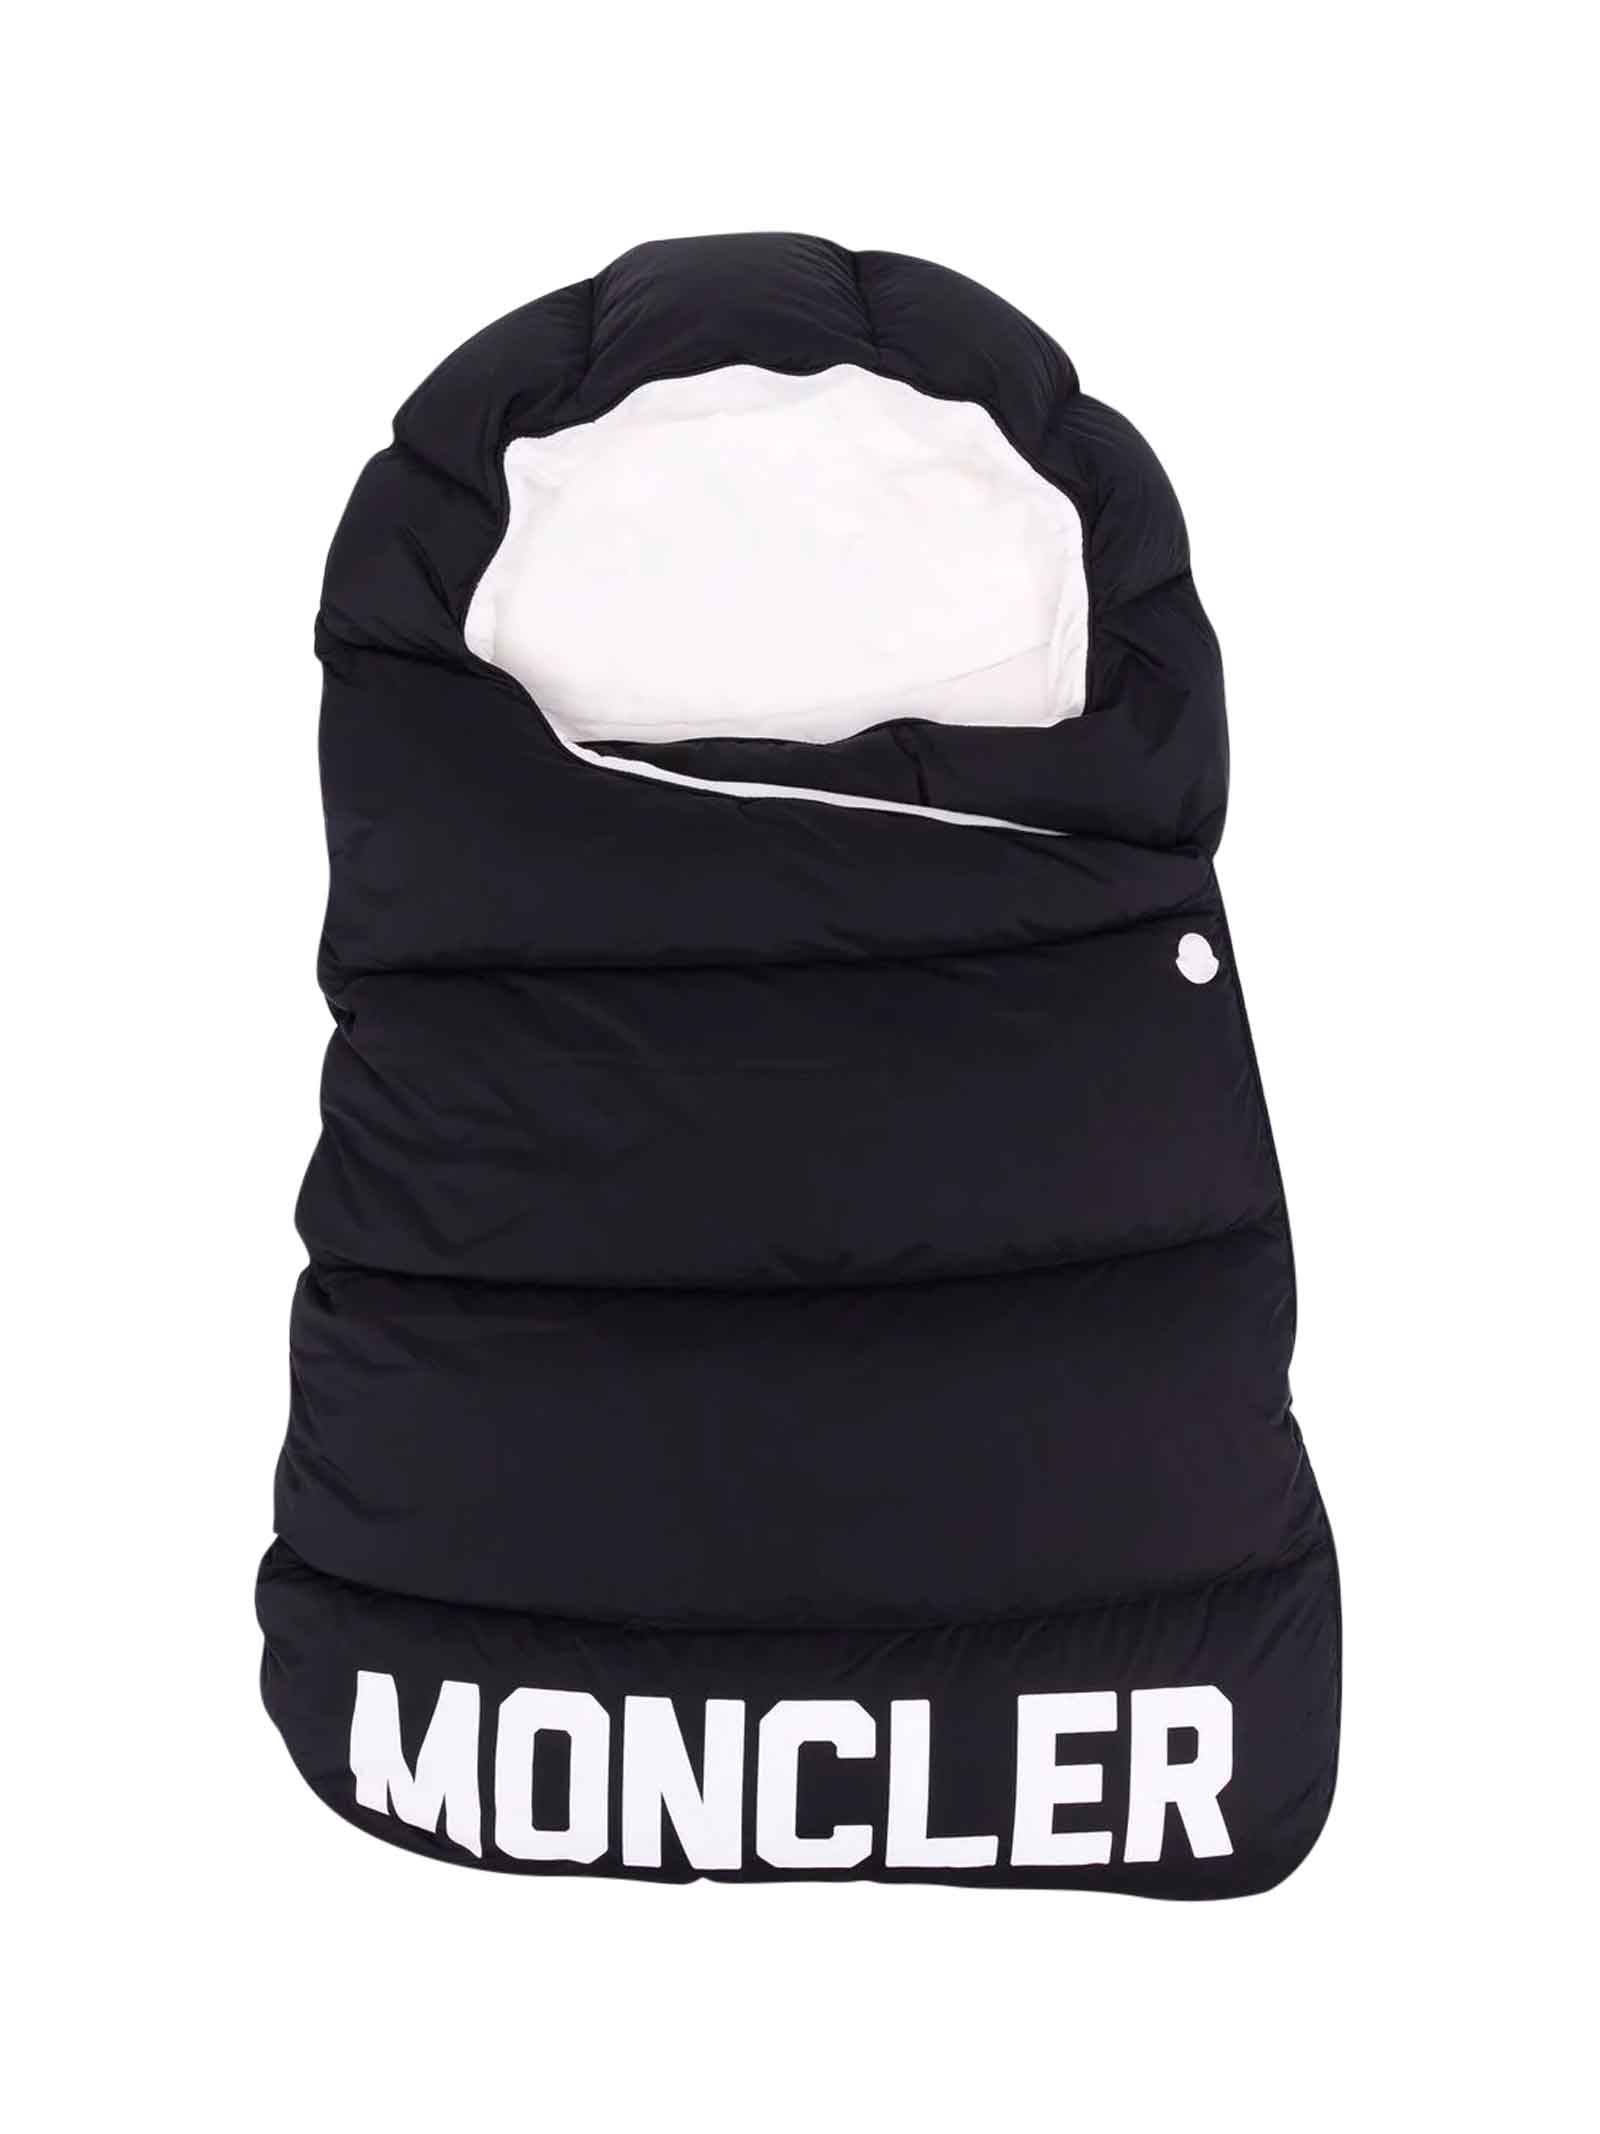 Moncler Black Sleeping Bag